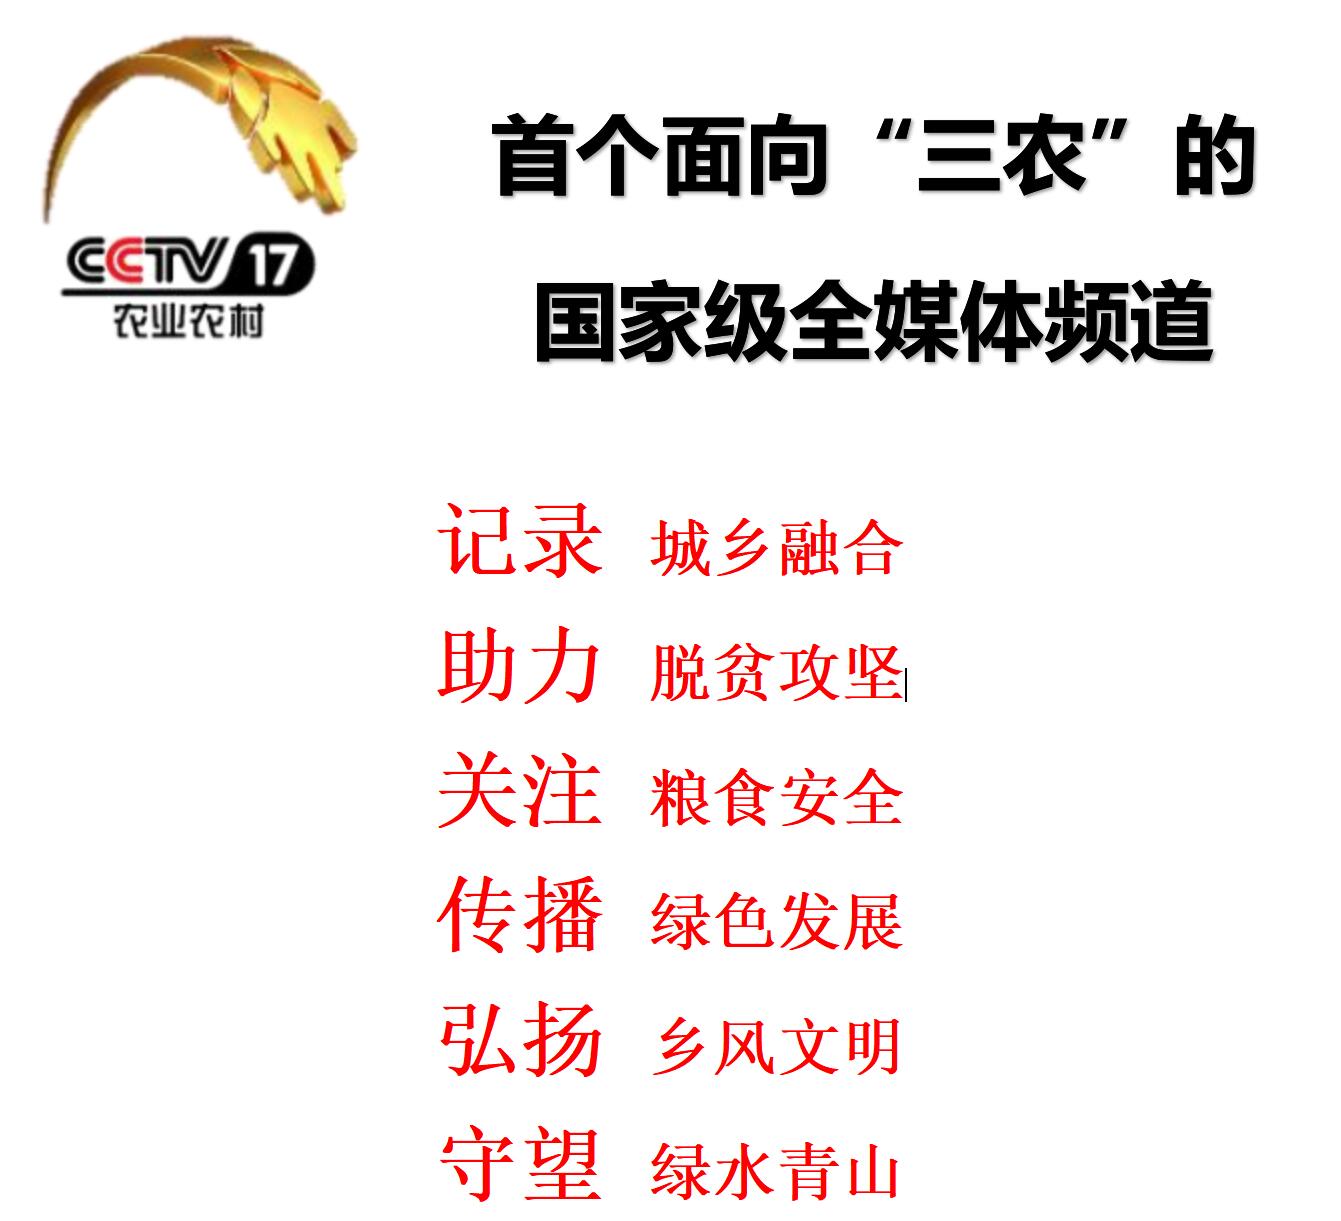 022年CCTV-17栏目广告刊例价格表"